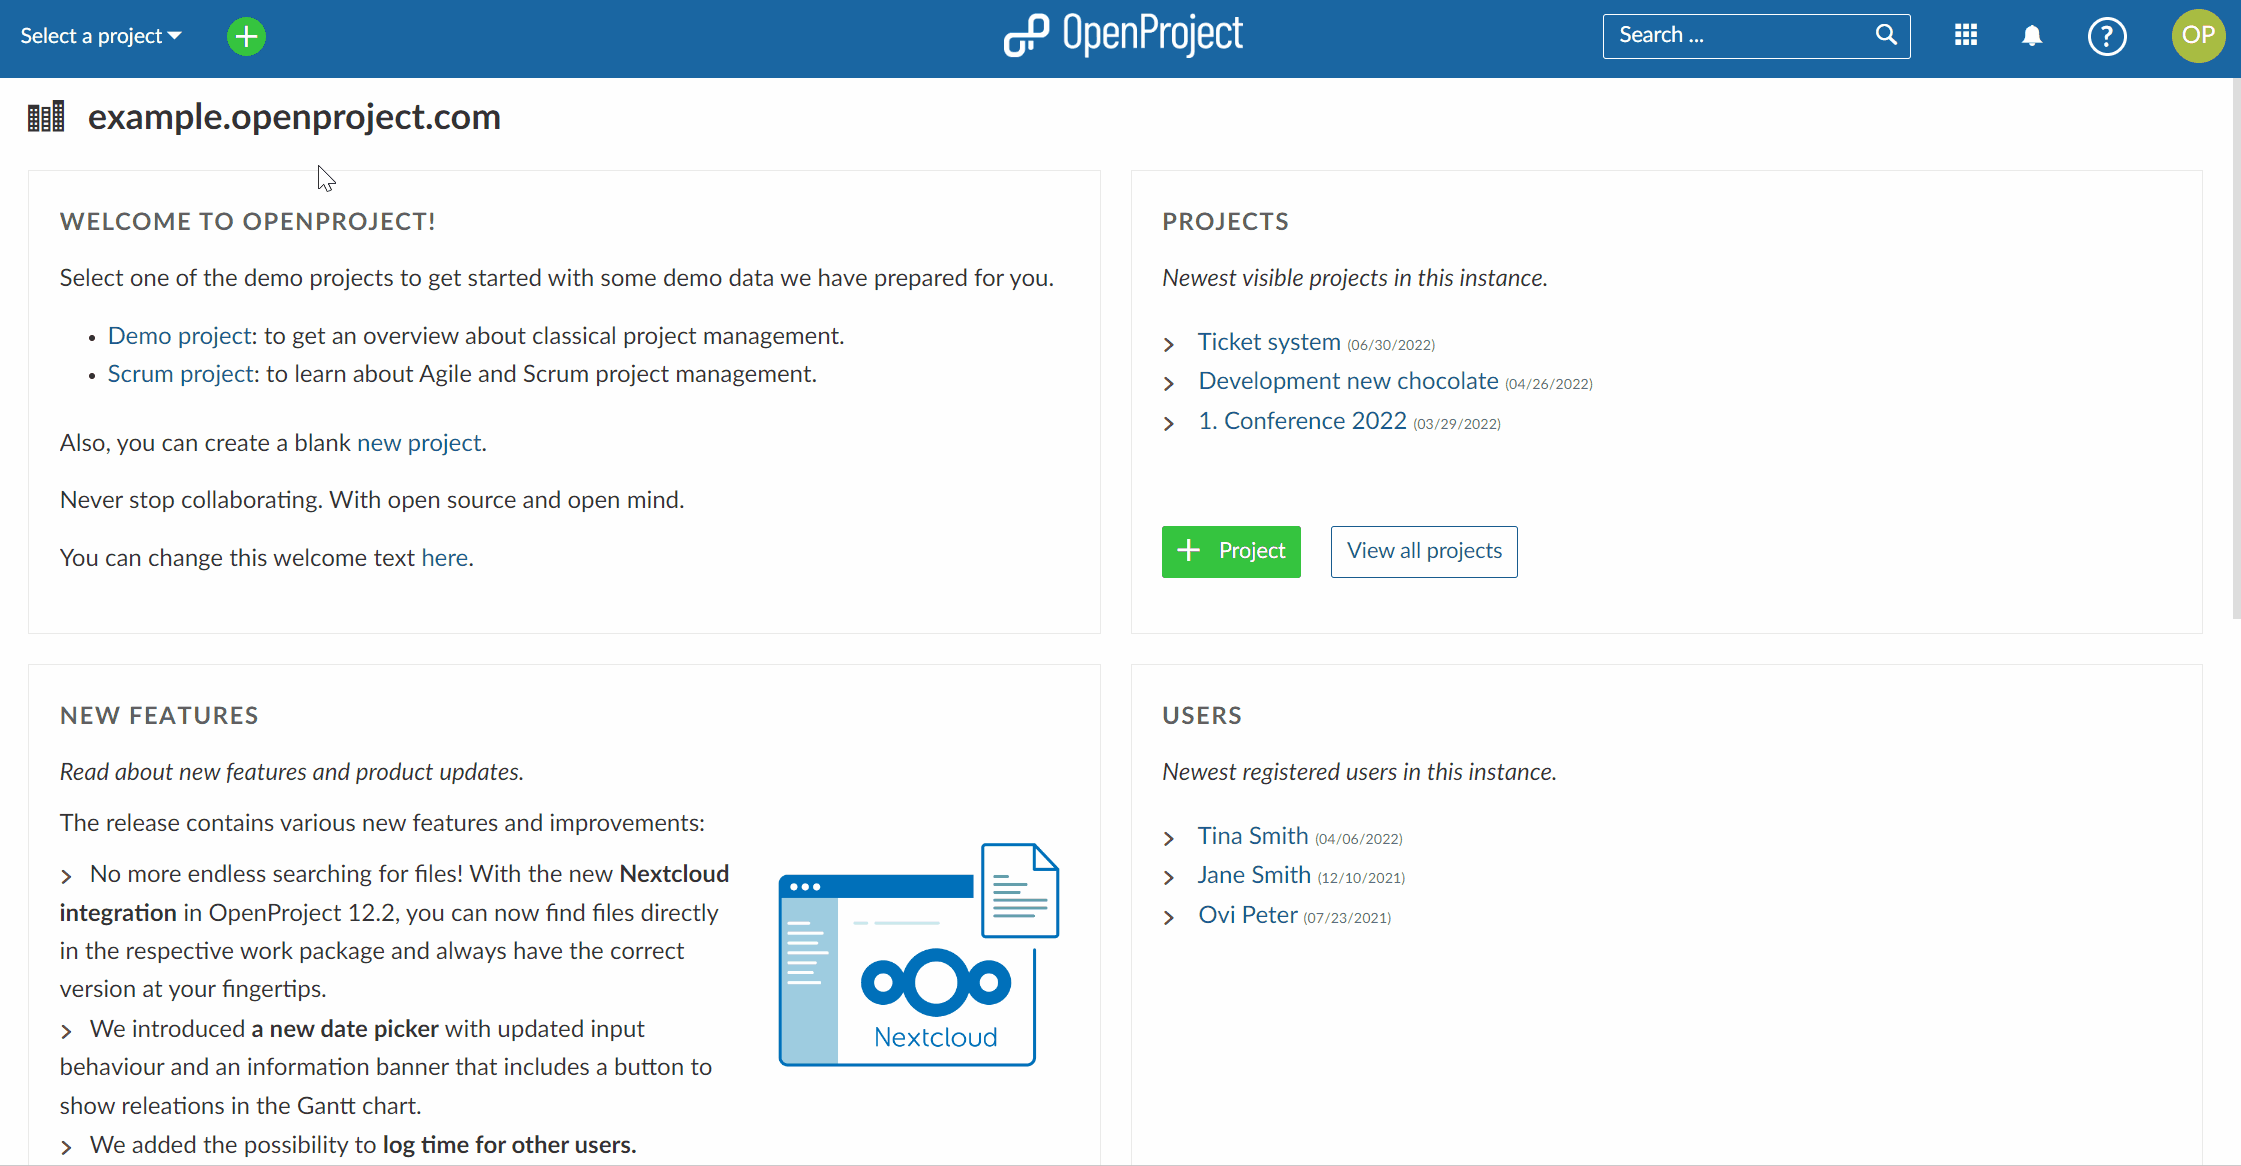 Ein GIF, das zeigt, dass ein Klick auf "Alle Projekte anzeigen" die gesamte Projektliste zeigt